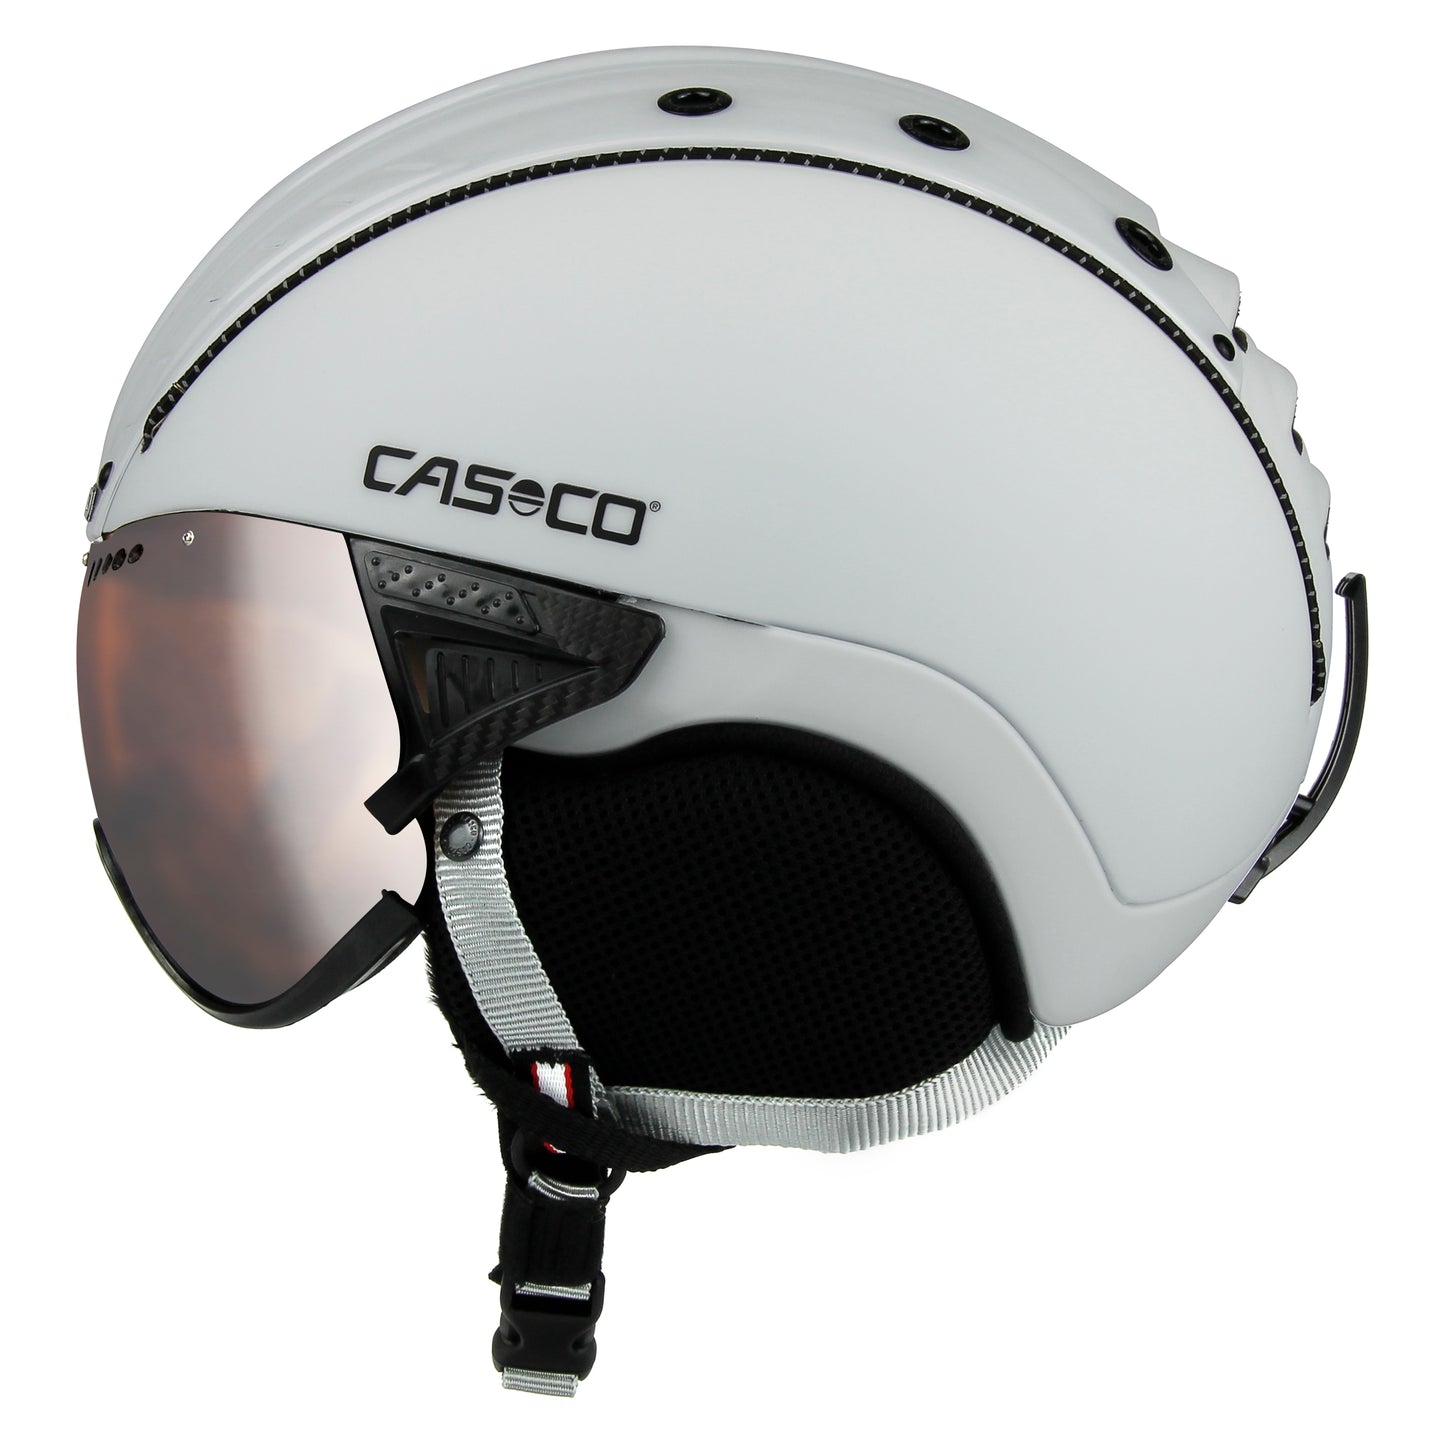 Casco SP-2 VISOR (carbonic) white